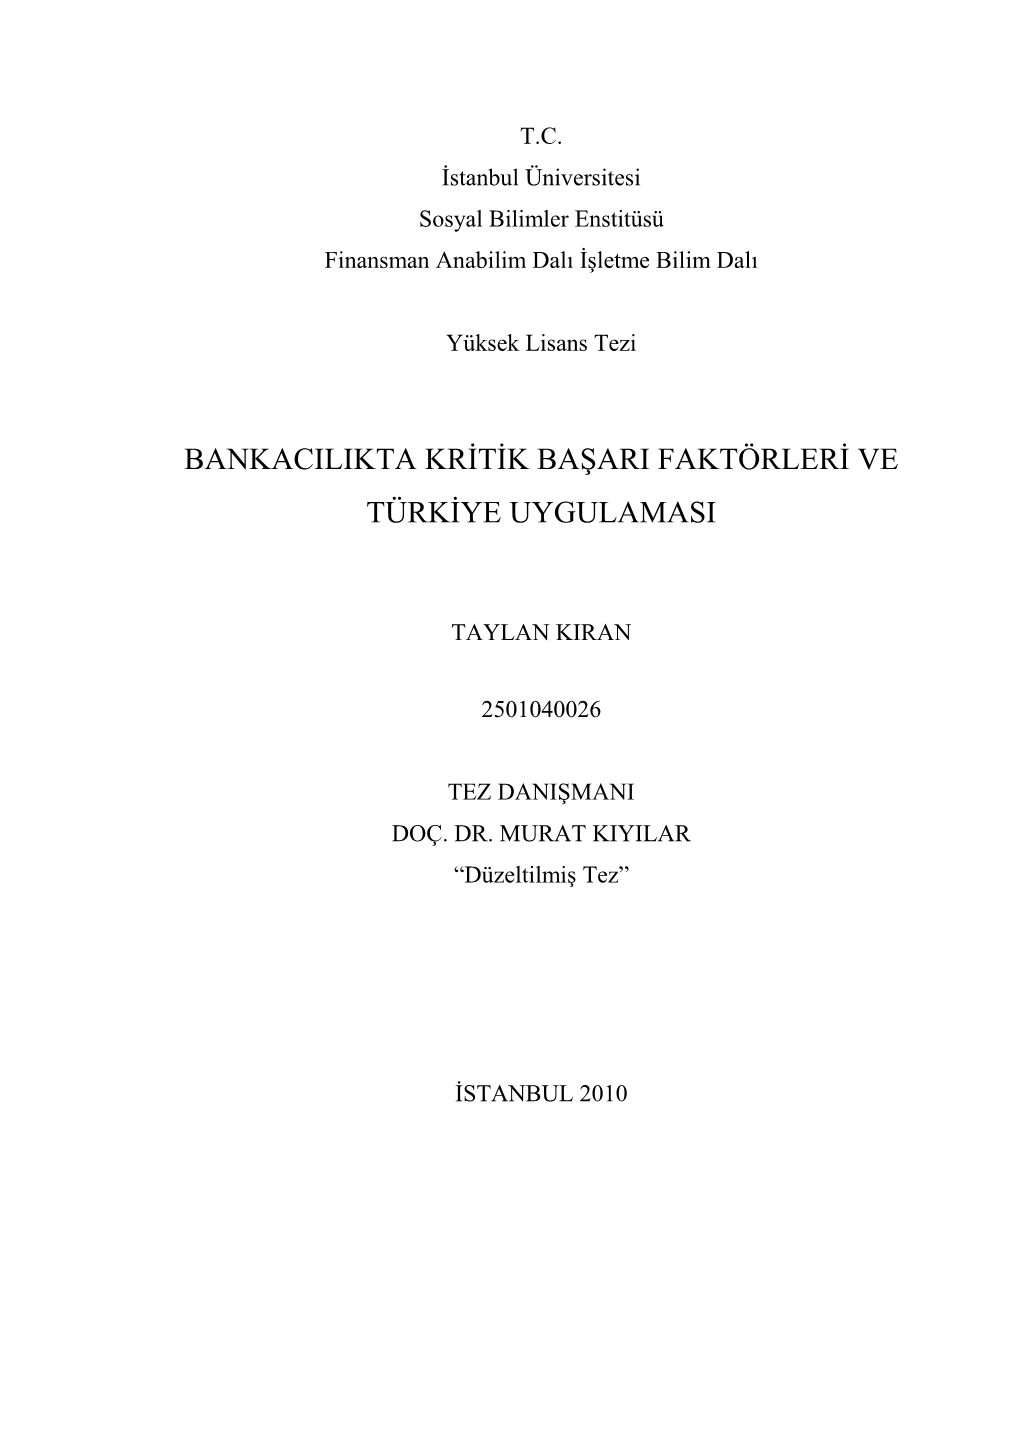 Bankacilikta Kritik Başari Faktörleri Ve Türkiye Uygulamasi